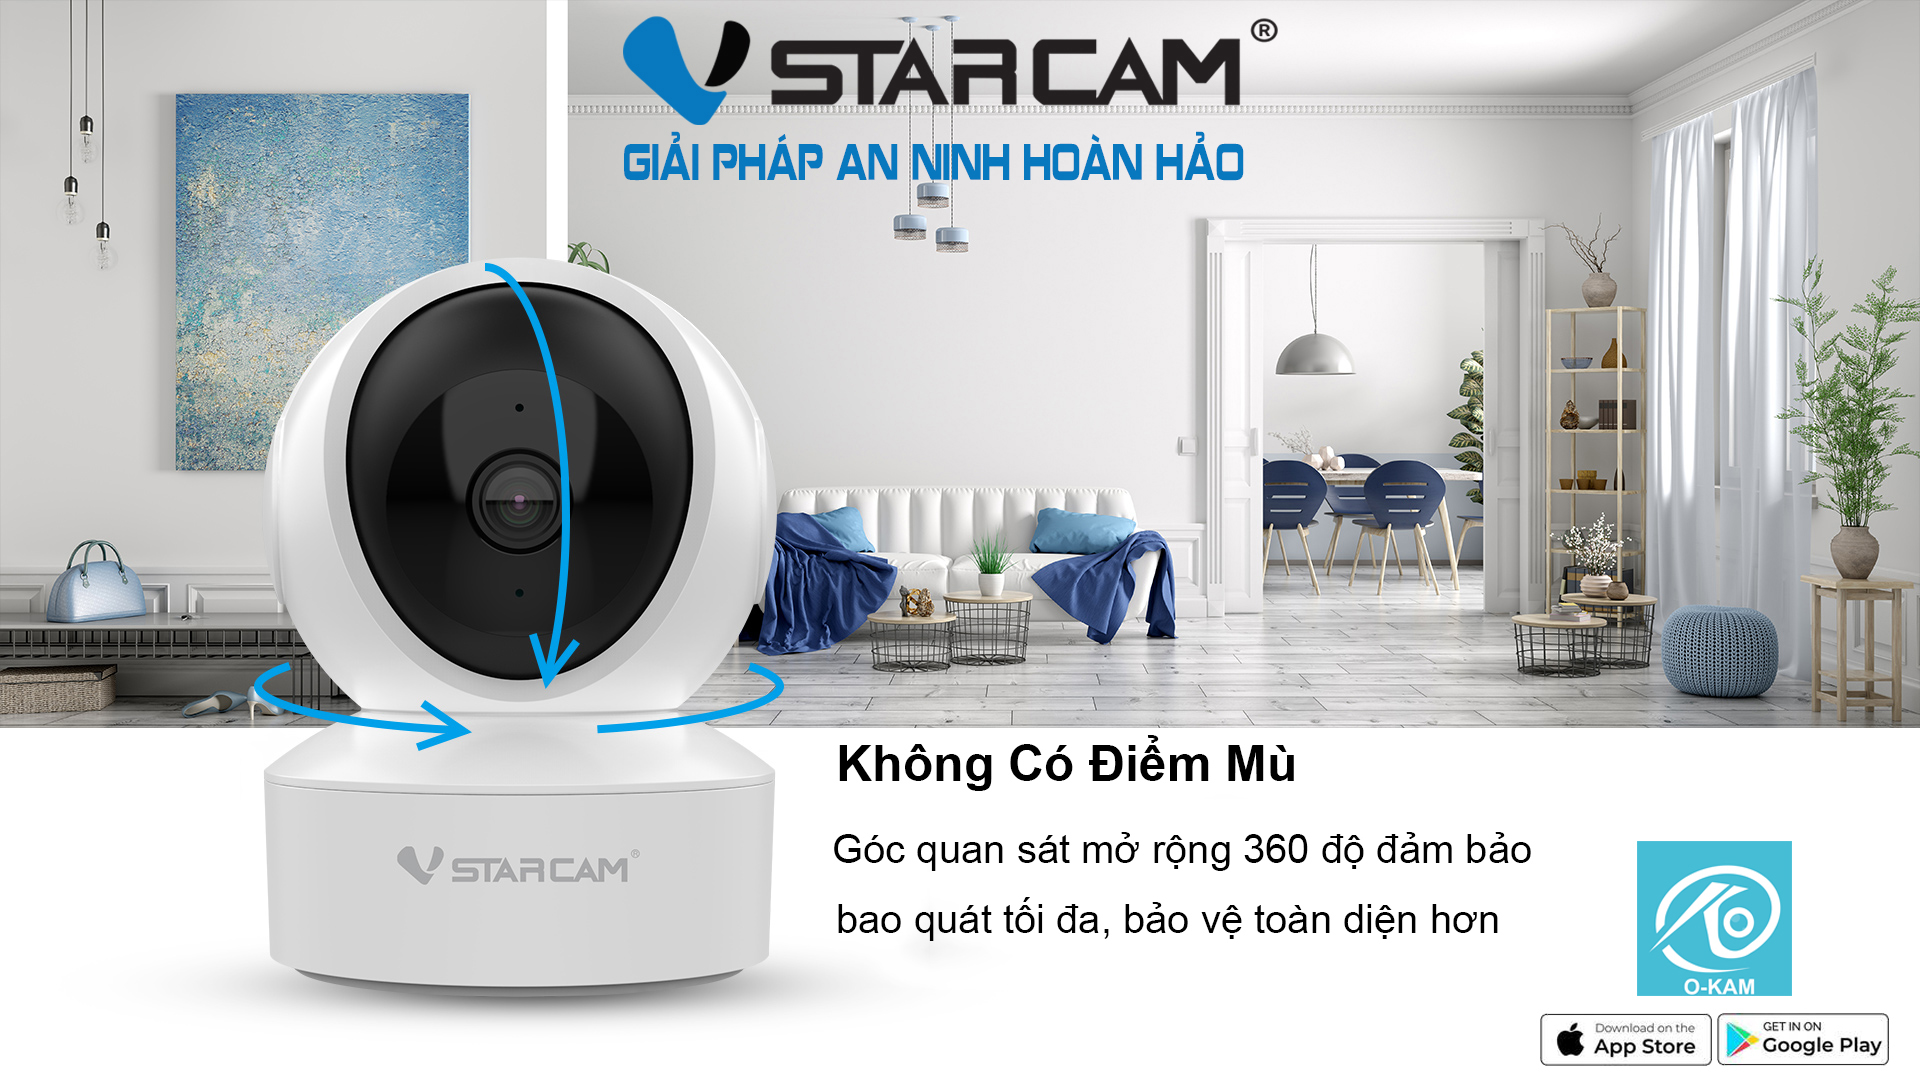 Camera IP Wifi STARCAM CS49 3MP Robo Chính hãng (Đàm thoại 2 chiều, Hồng ngoại 10m, Có LAN, Kèm nguồn 5V)